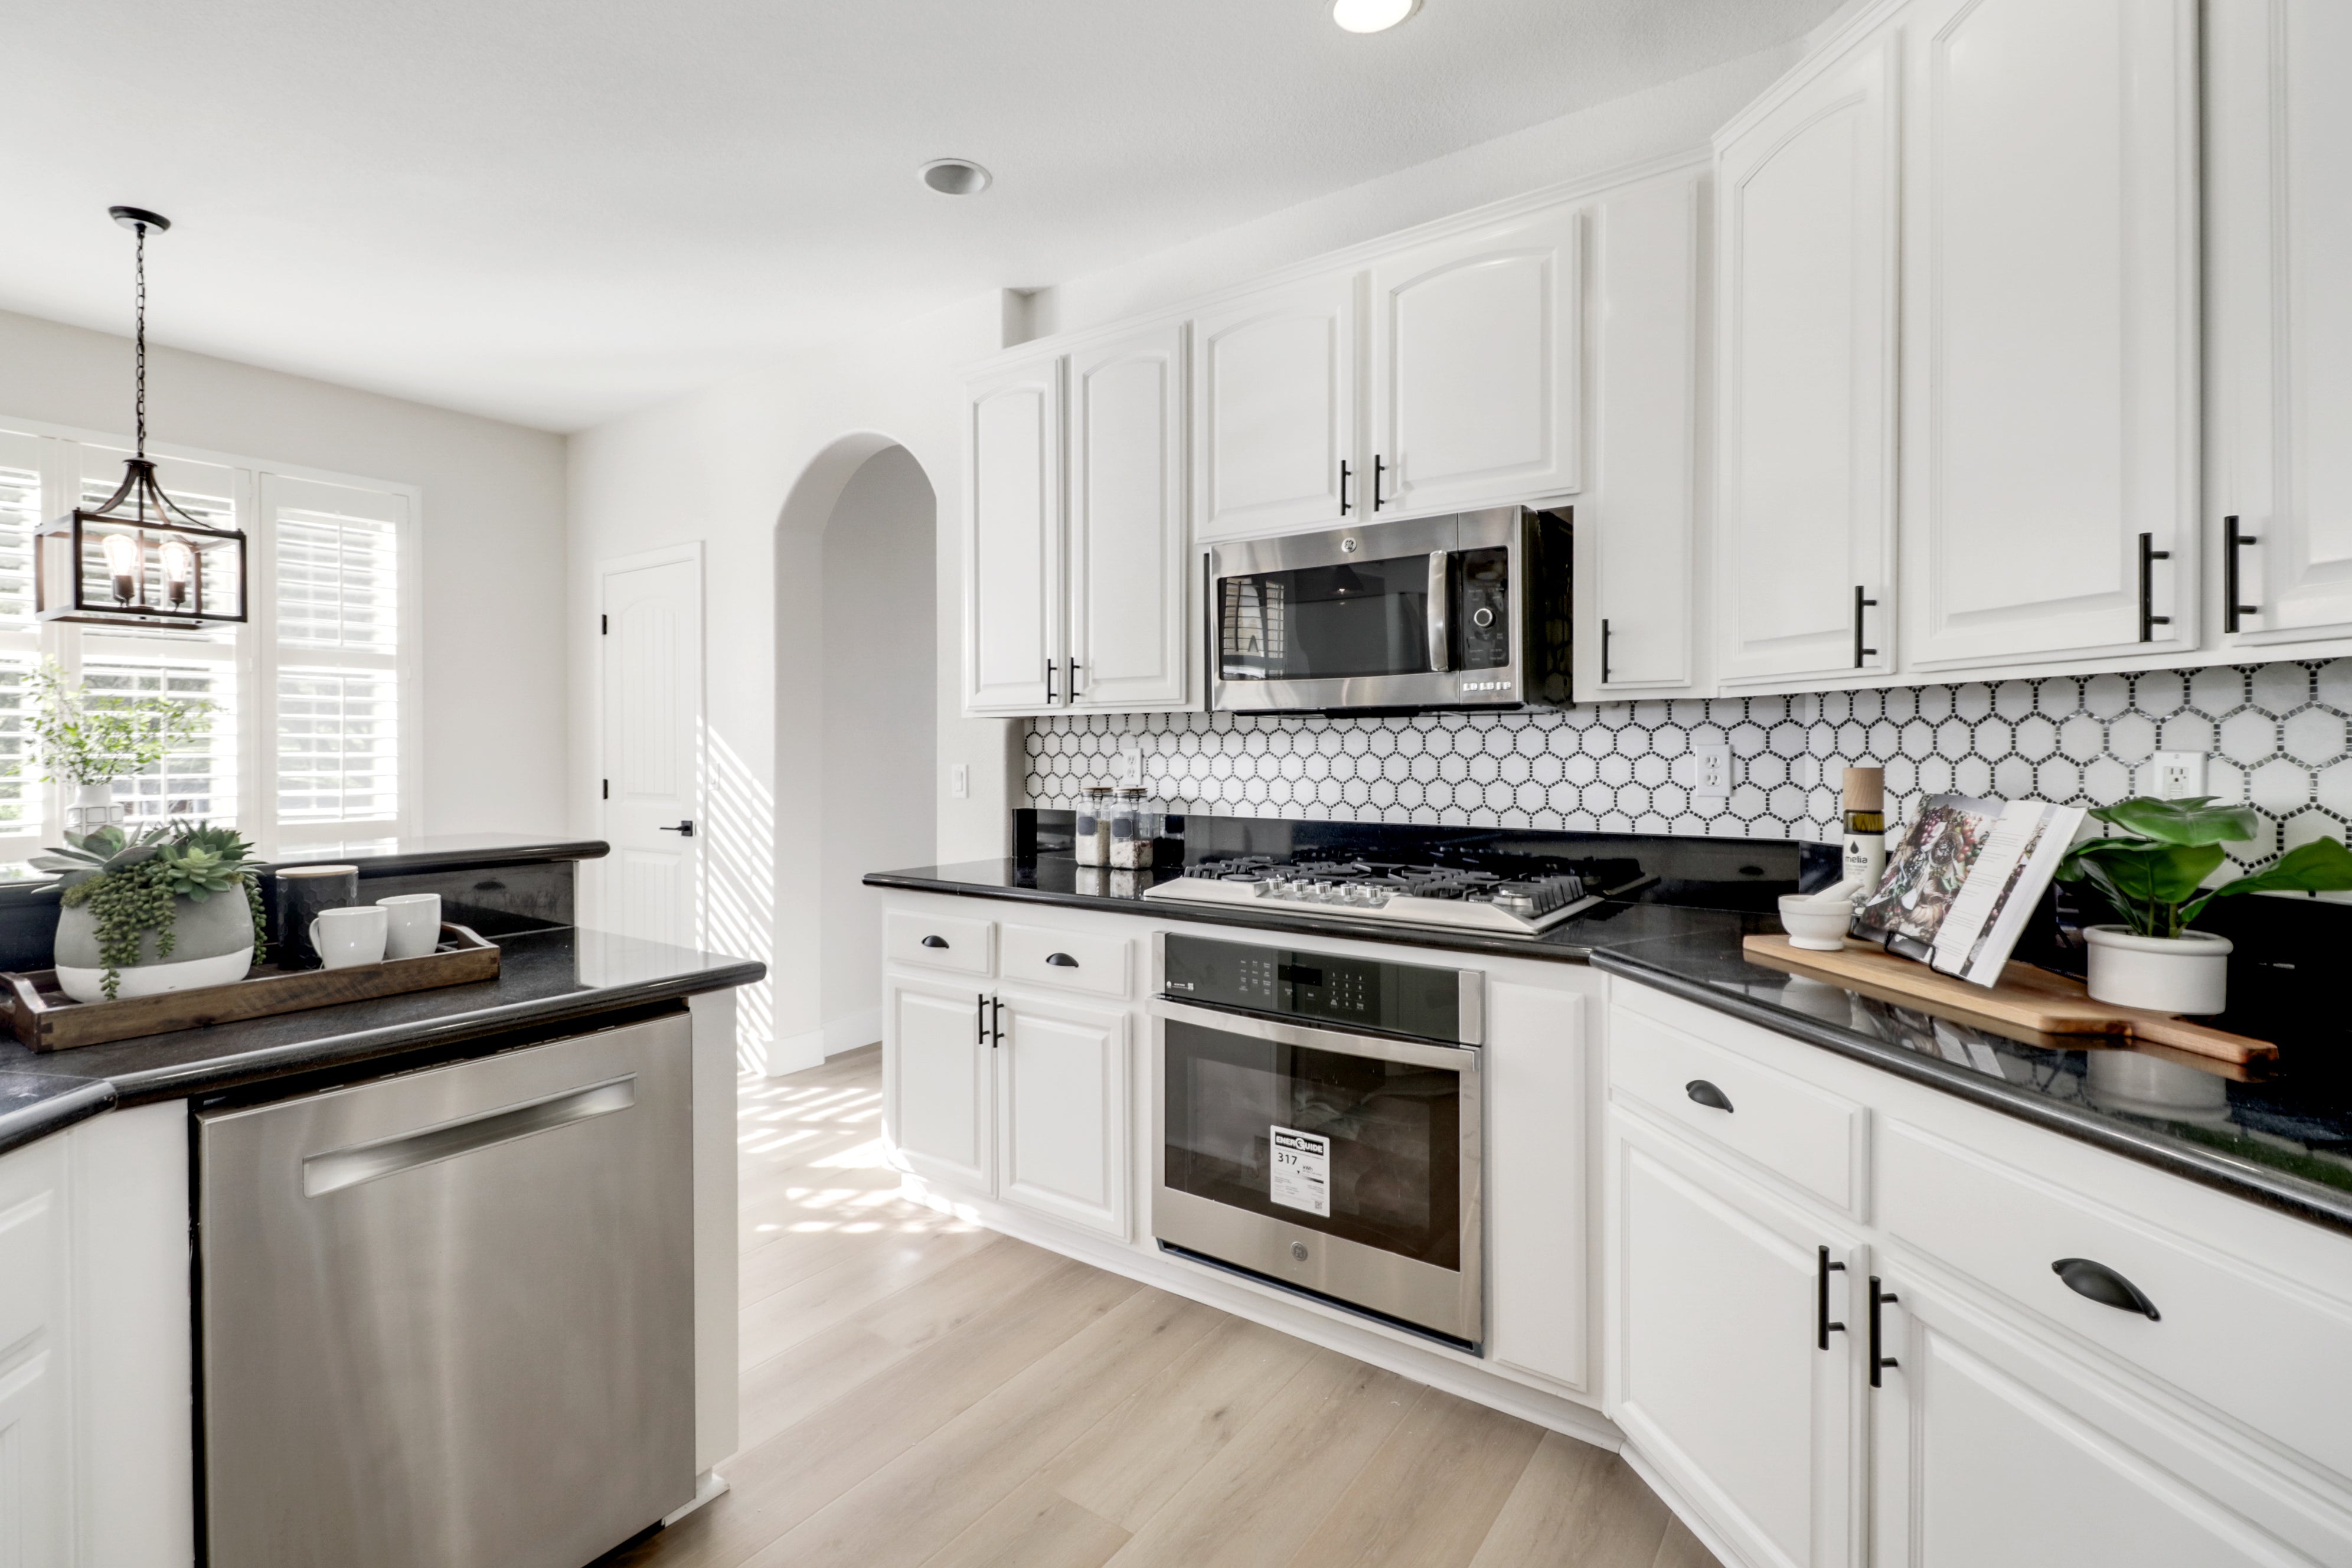 Premiere Home Staging Projects | Kitchen interior design idea - Barton Rd, Granite Bay